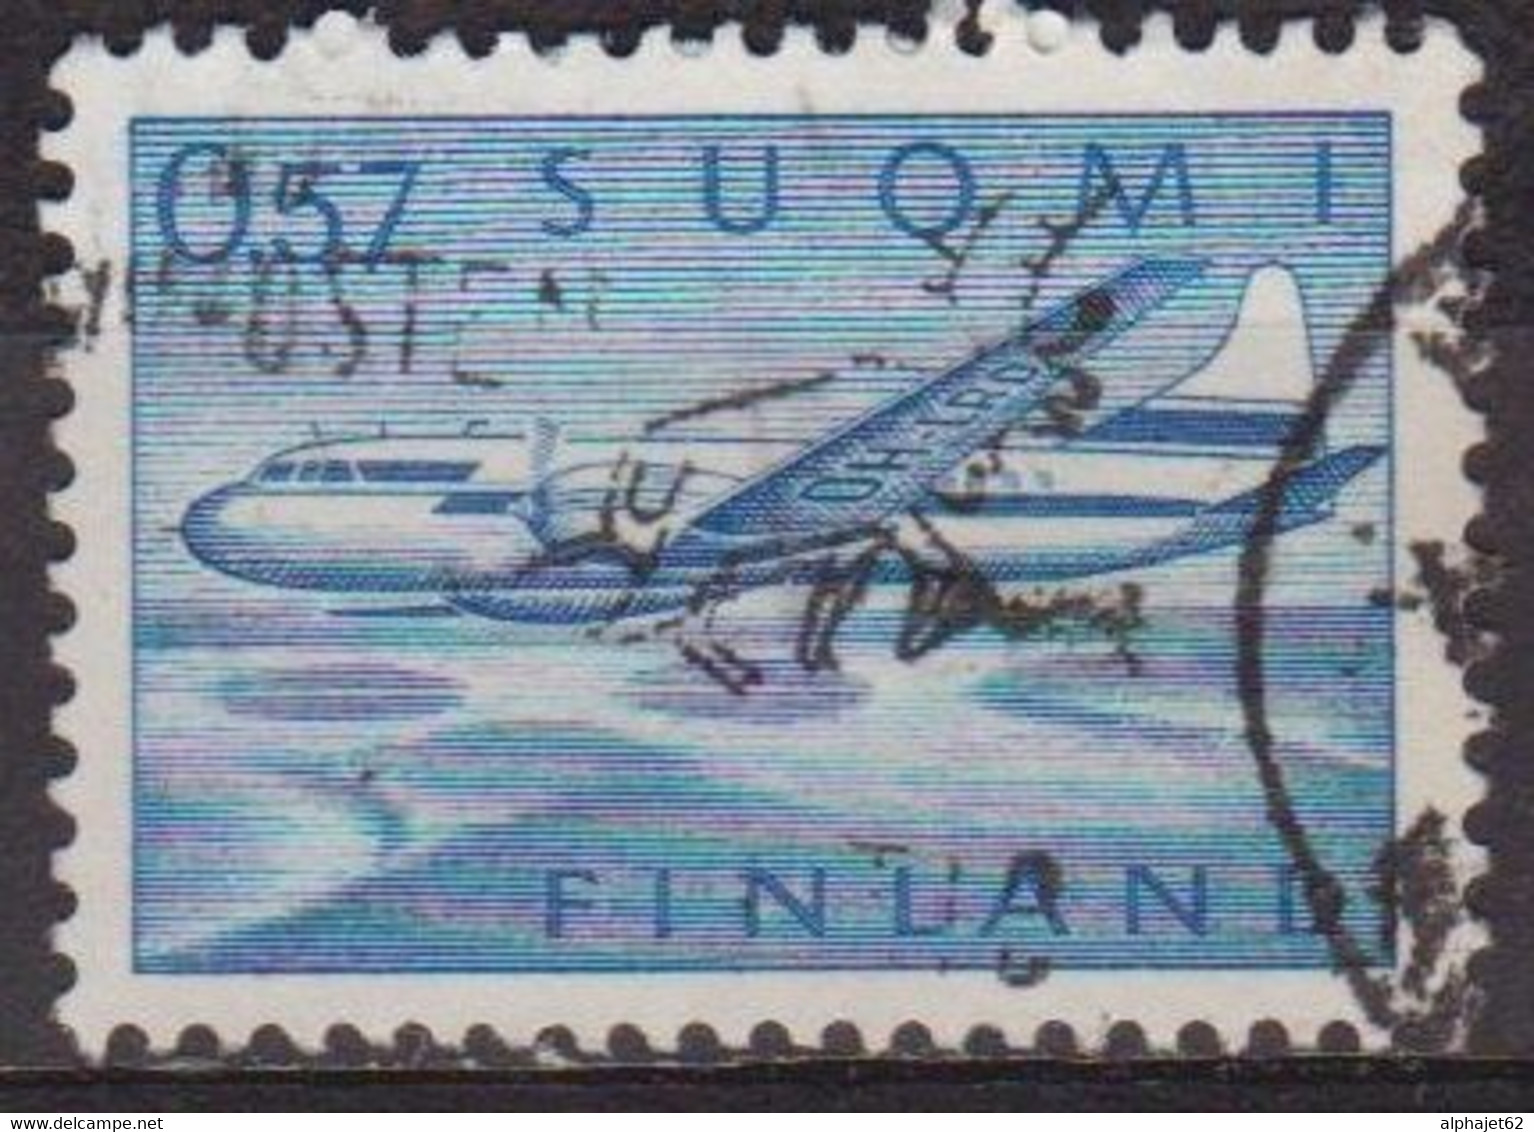 Convair 440, Bimoteur - FINLANDE - Avion De Ligne - Aviation - N° 12 - 1970 - Used Stamps